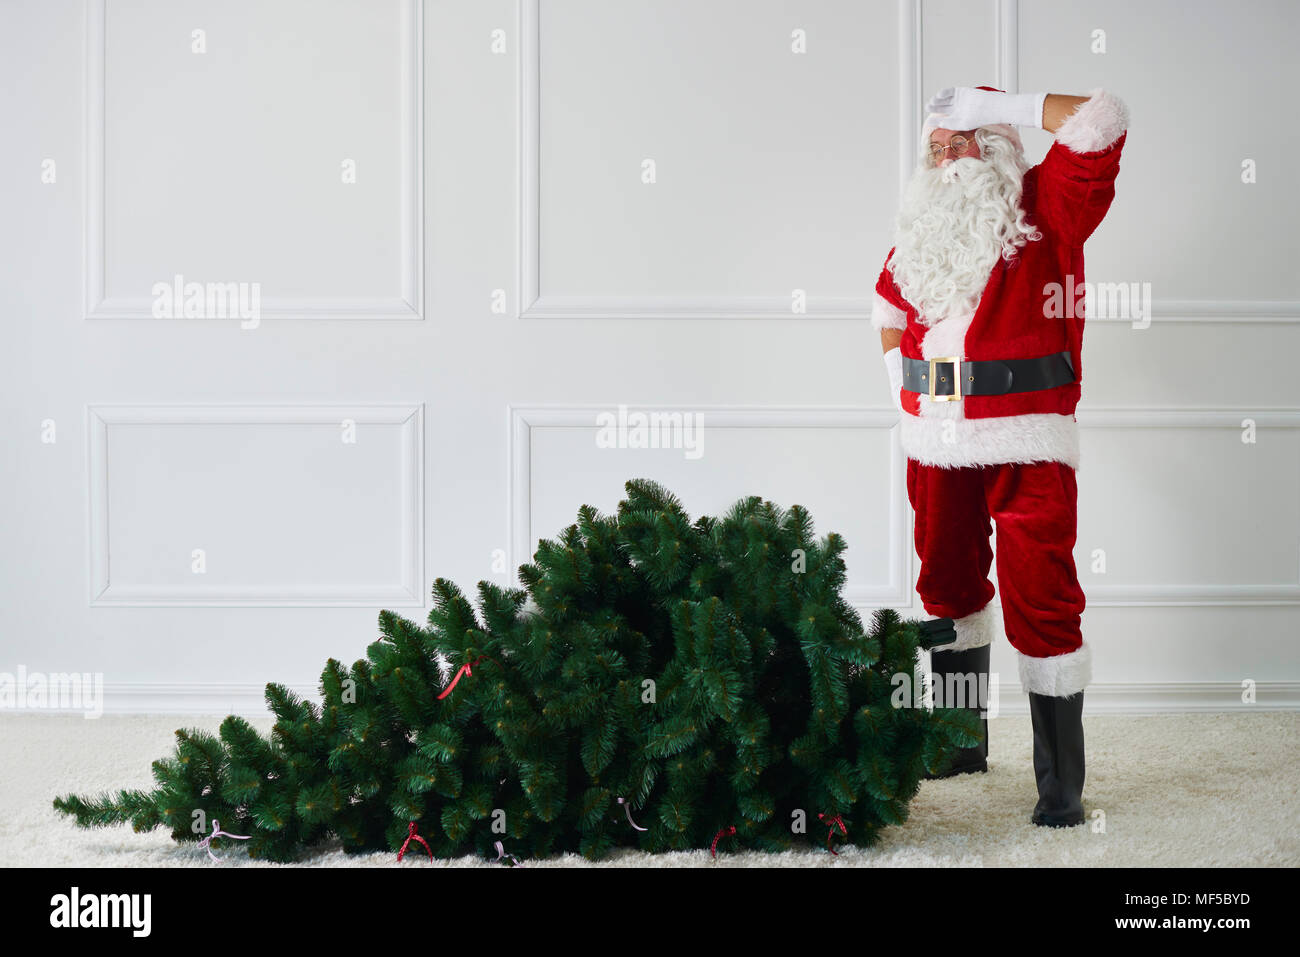 Santa Claus with Christmas tree Stock Photo